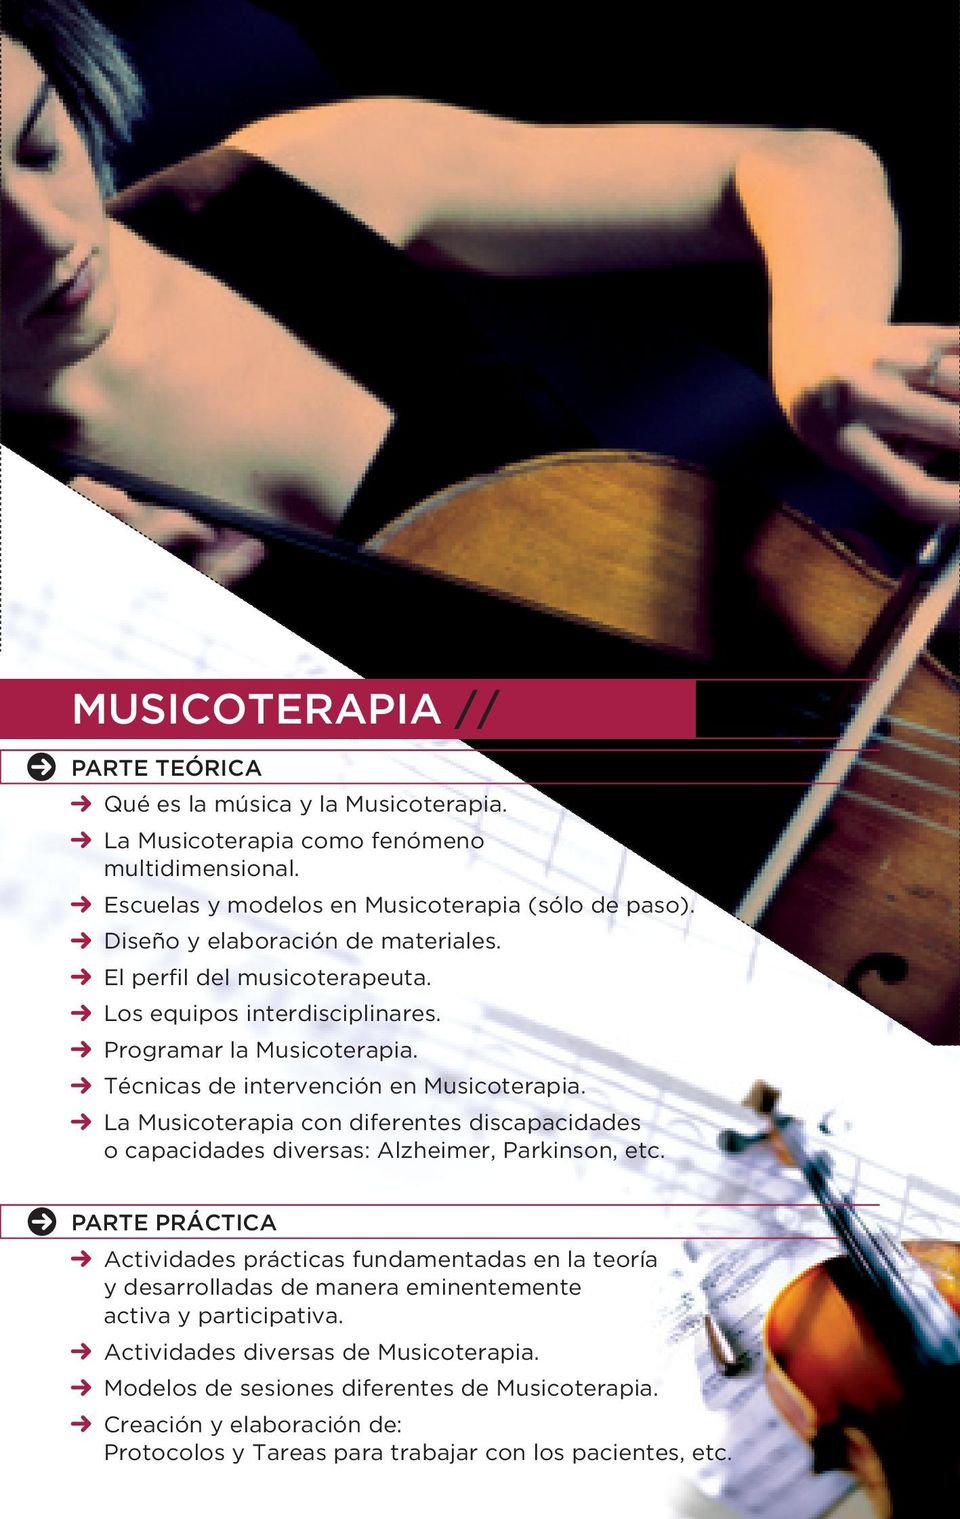 La Musicoterapia con diferentes discapacidades o capacidades diversas: Alzheimer, Parkinson, etc.